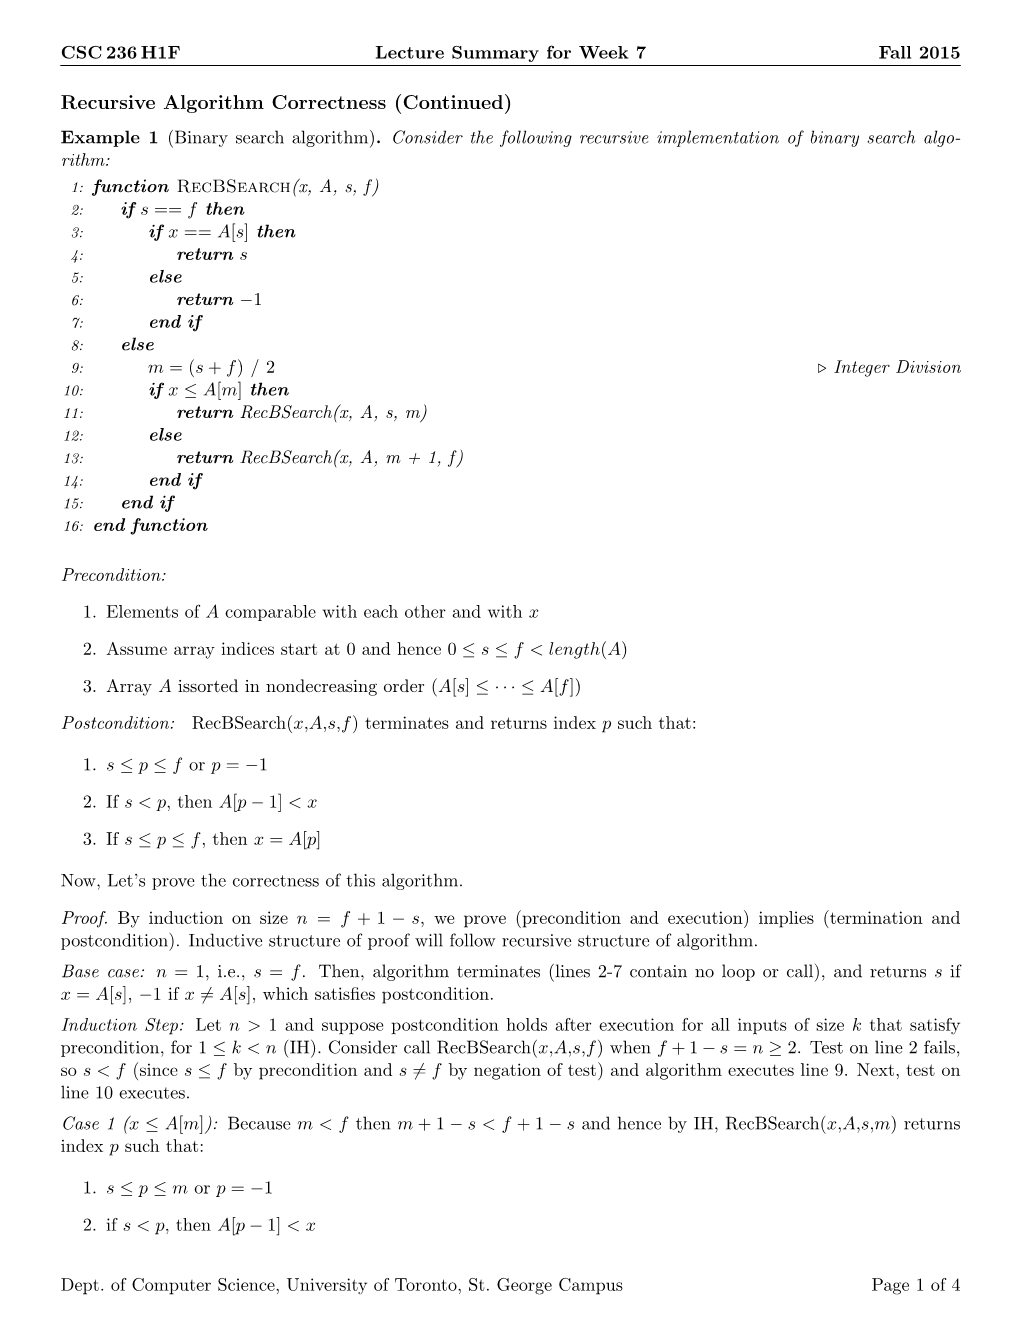 Recursive Algorithm Correctness (Continued) Example 1 (Binary Search Algorithm)